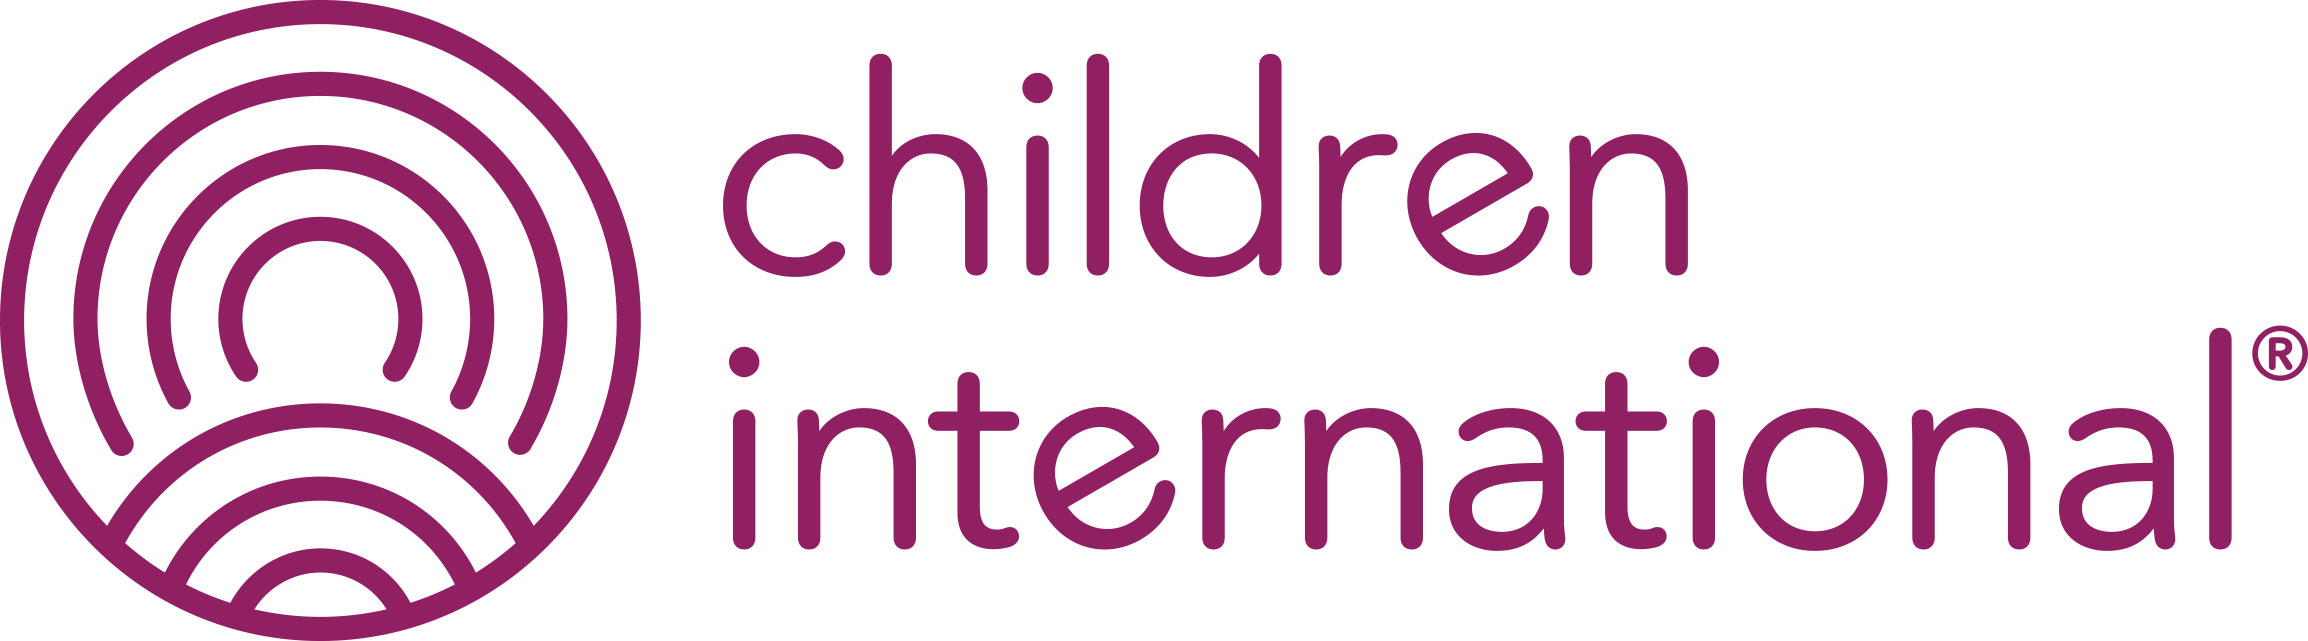 Payara’s Charity of the Year: Children International